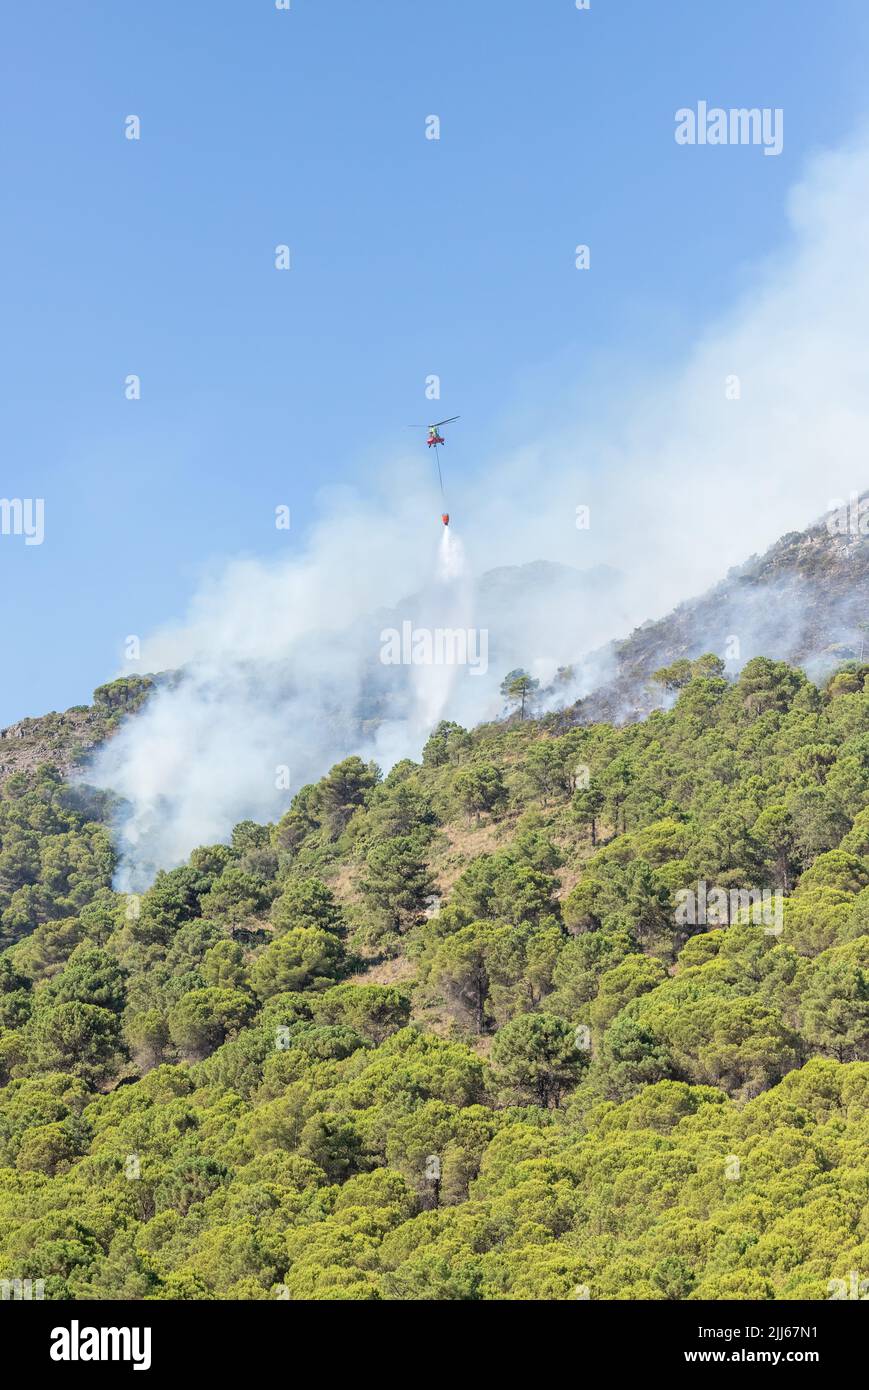 Hélicoptère larguer de l'eau en cascade sur le feu dans la Sierra de Mijas. Montagnes avec forêt de pins en feu et fumée. Banque D'Images